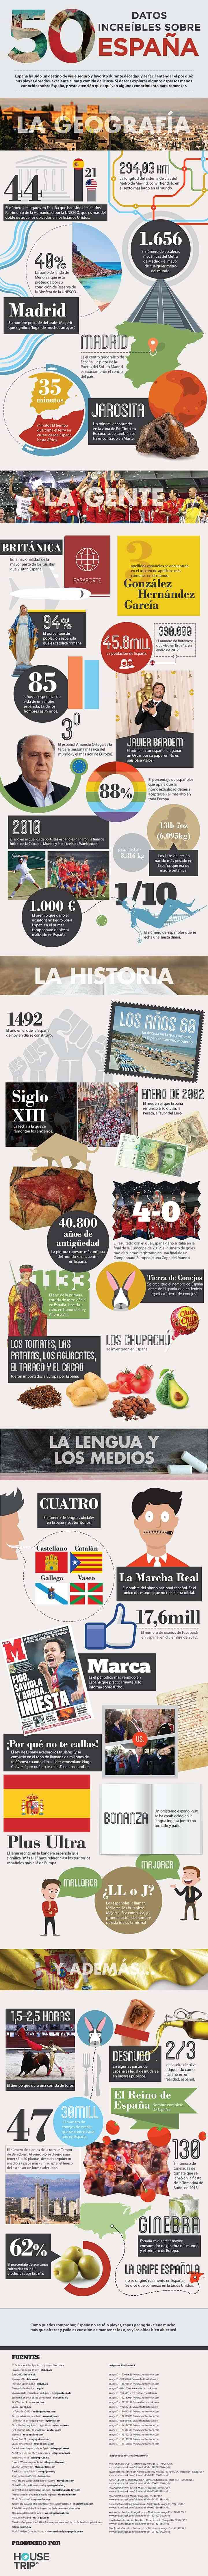 Infografía: 50 datos increíbles sobre España